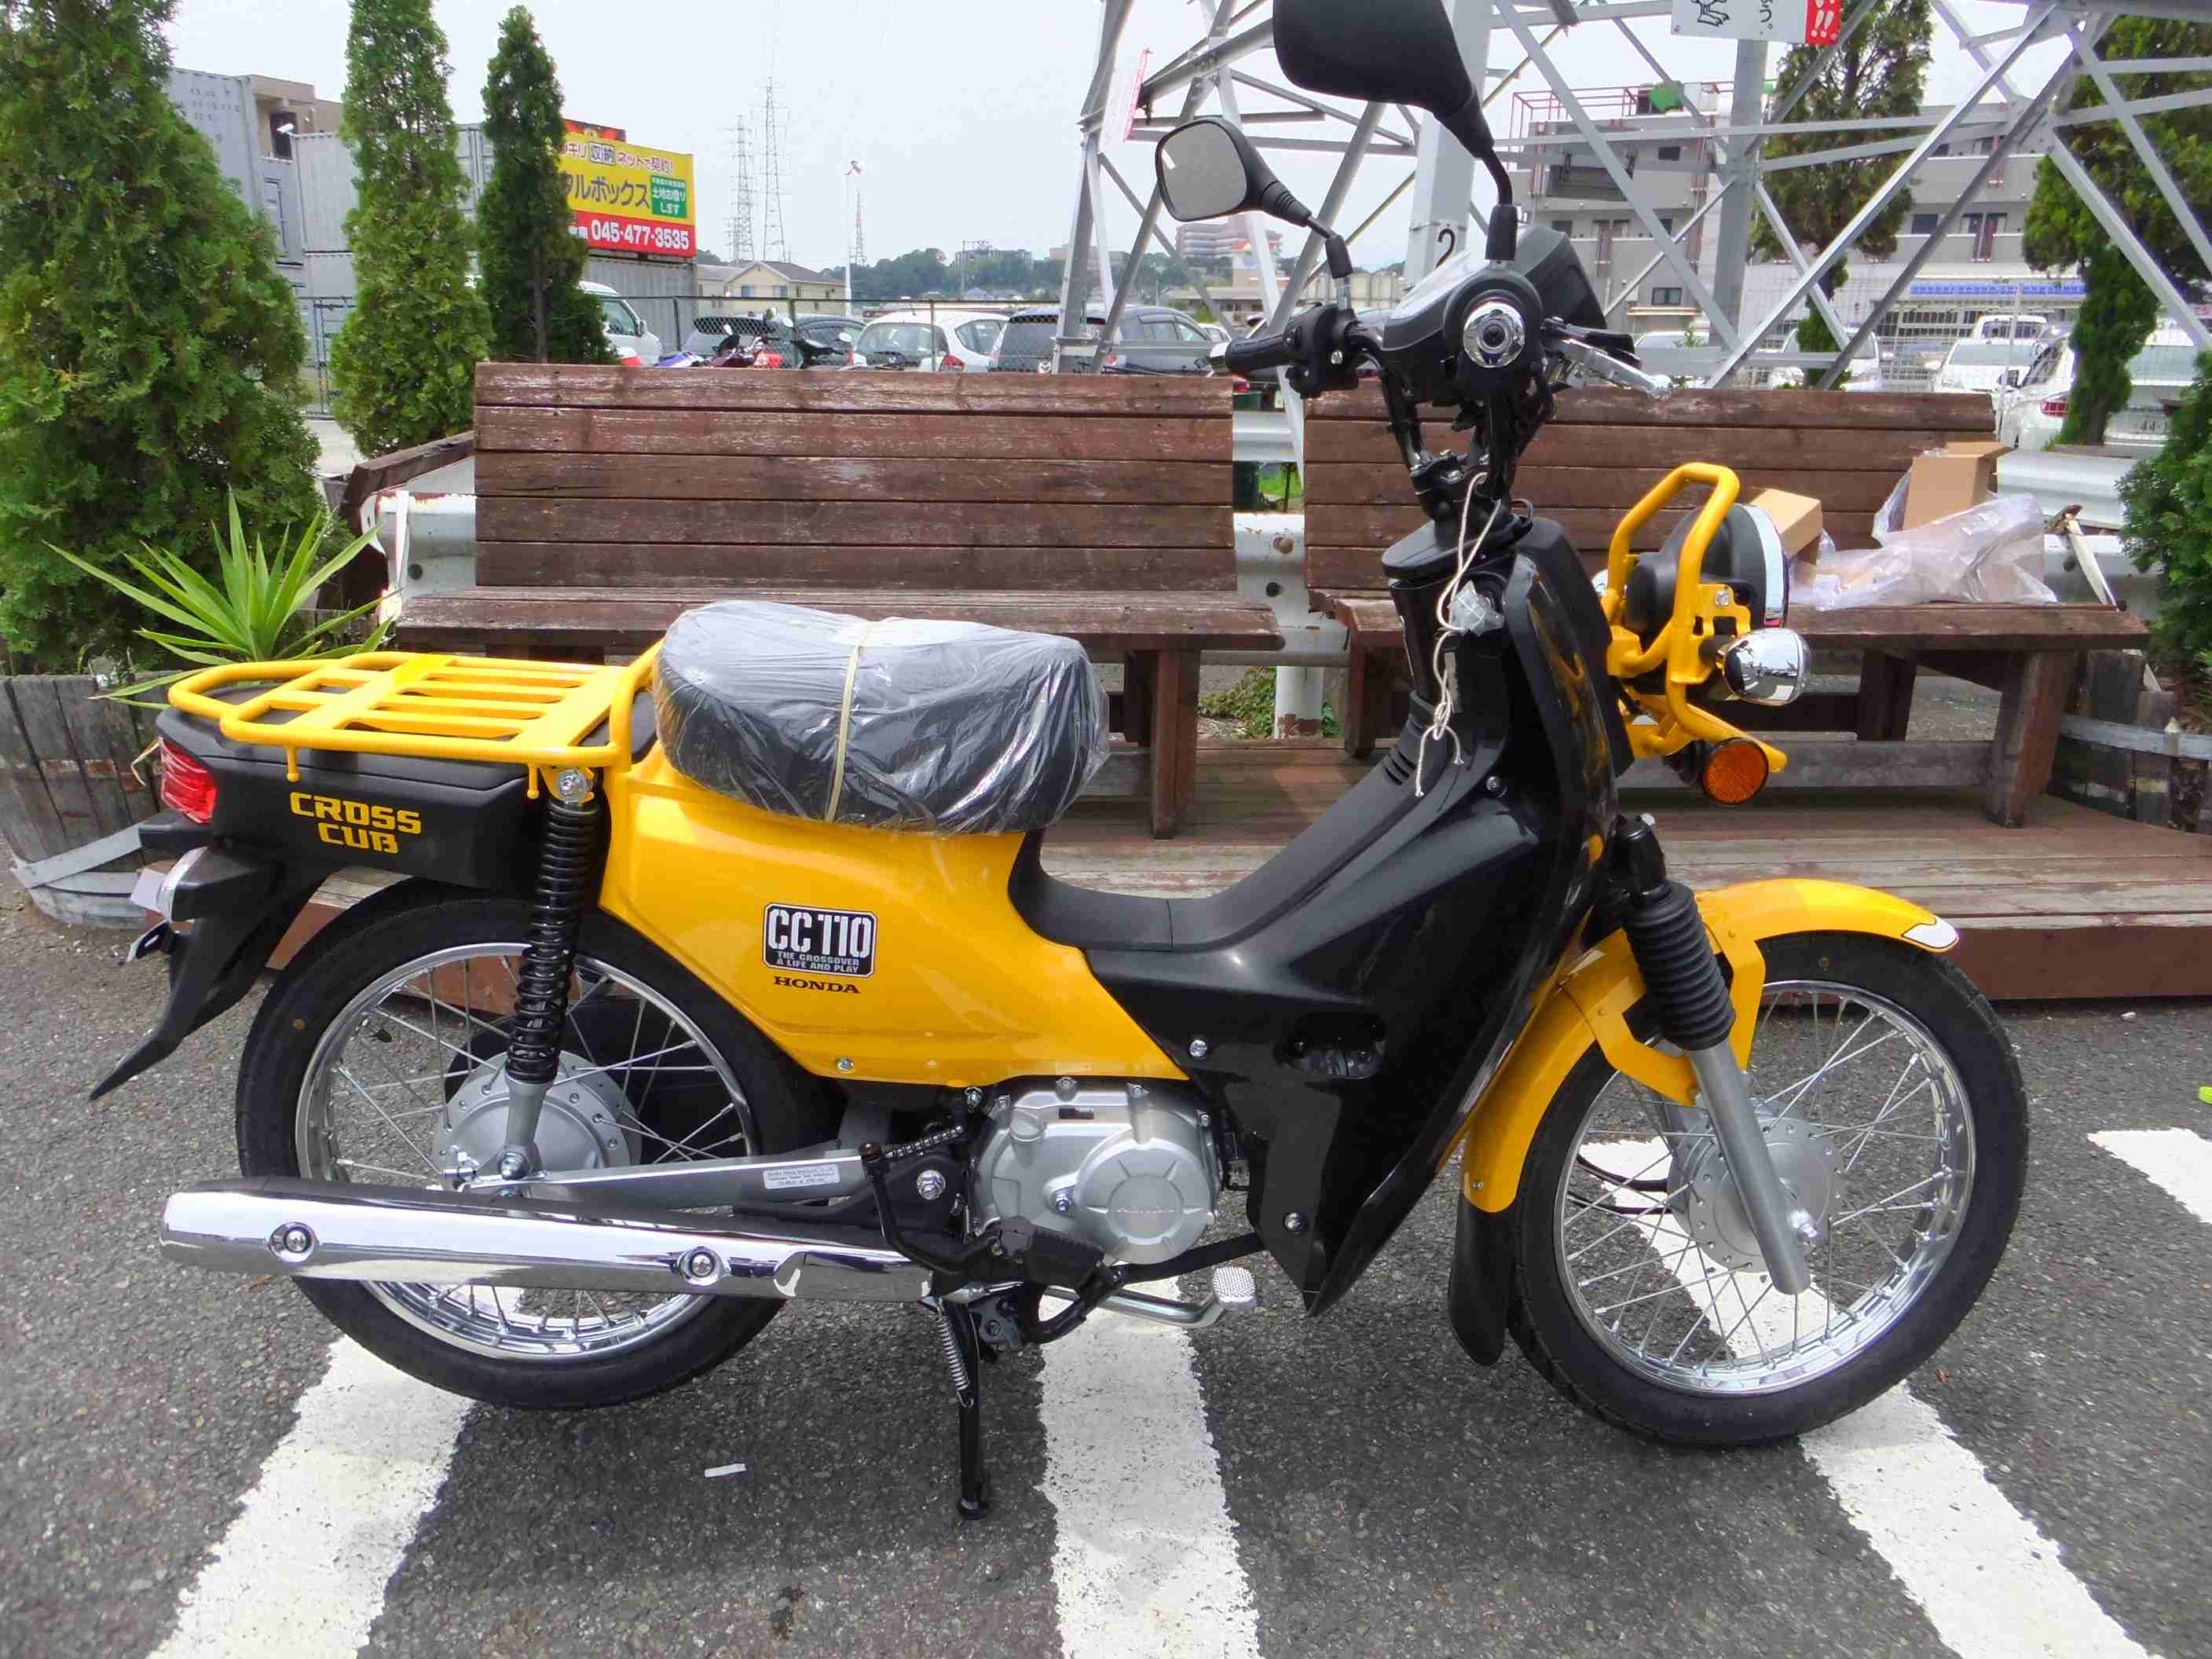 旧型クロスカブ在庫ございます 最新情報 U Media ユーメディア 中古バイク 新車バイク探しの決定版 神奈川 東京でバイク探すならユーメディア